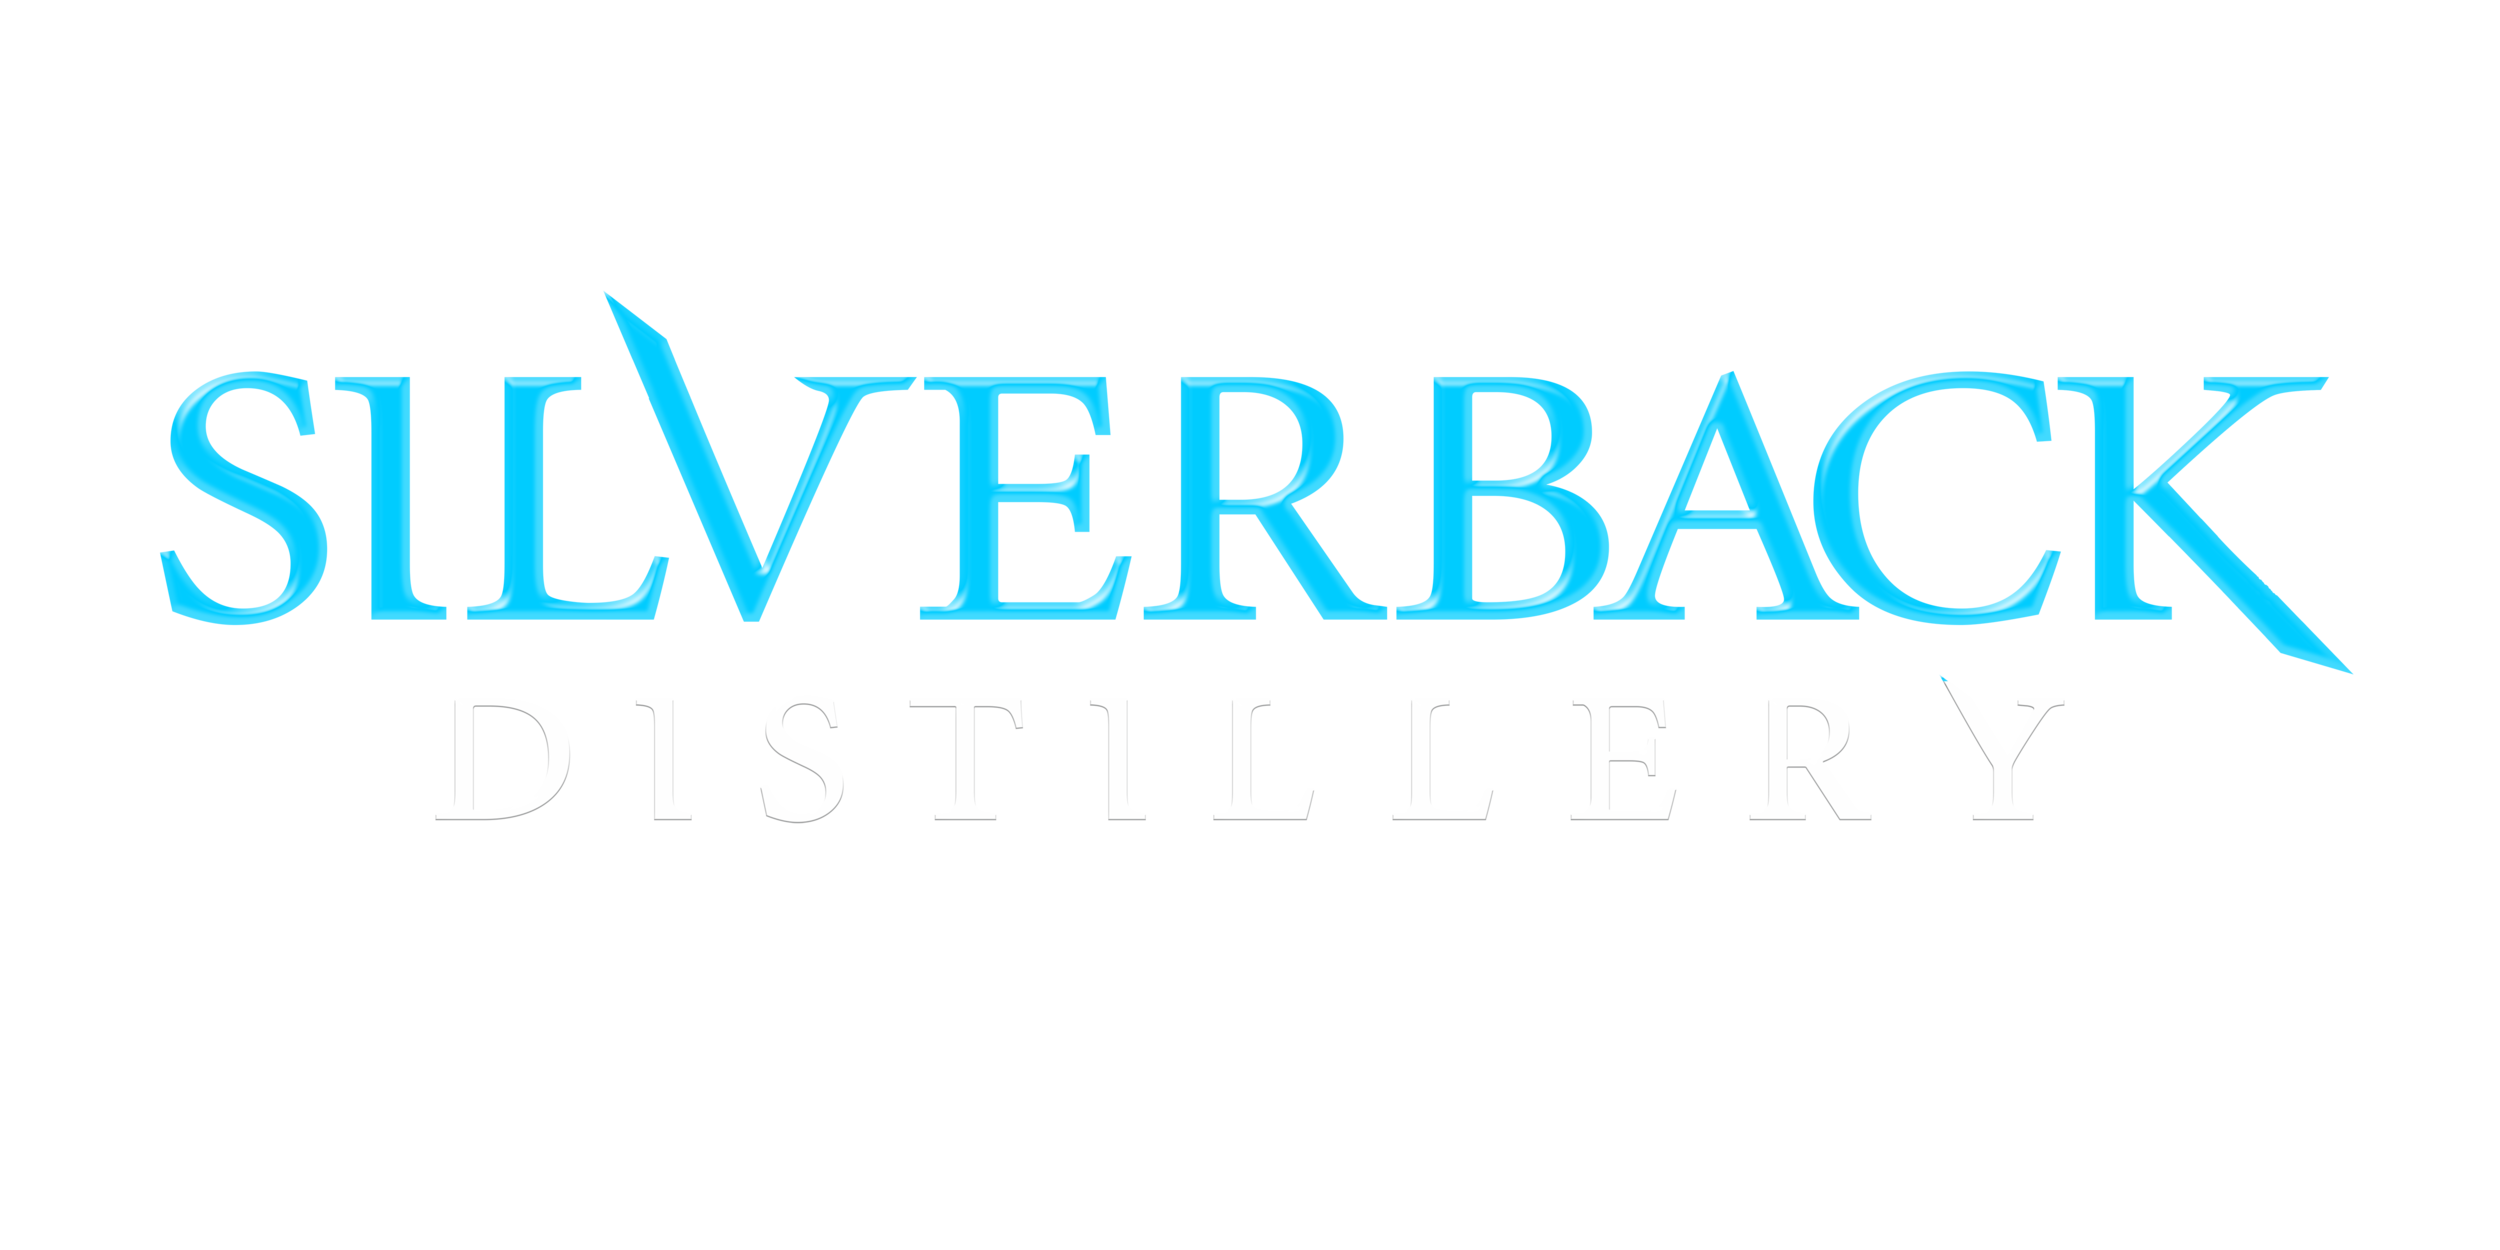 Silverback Distillery